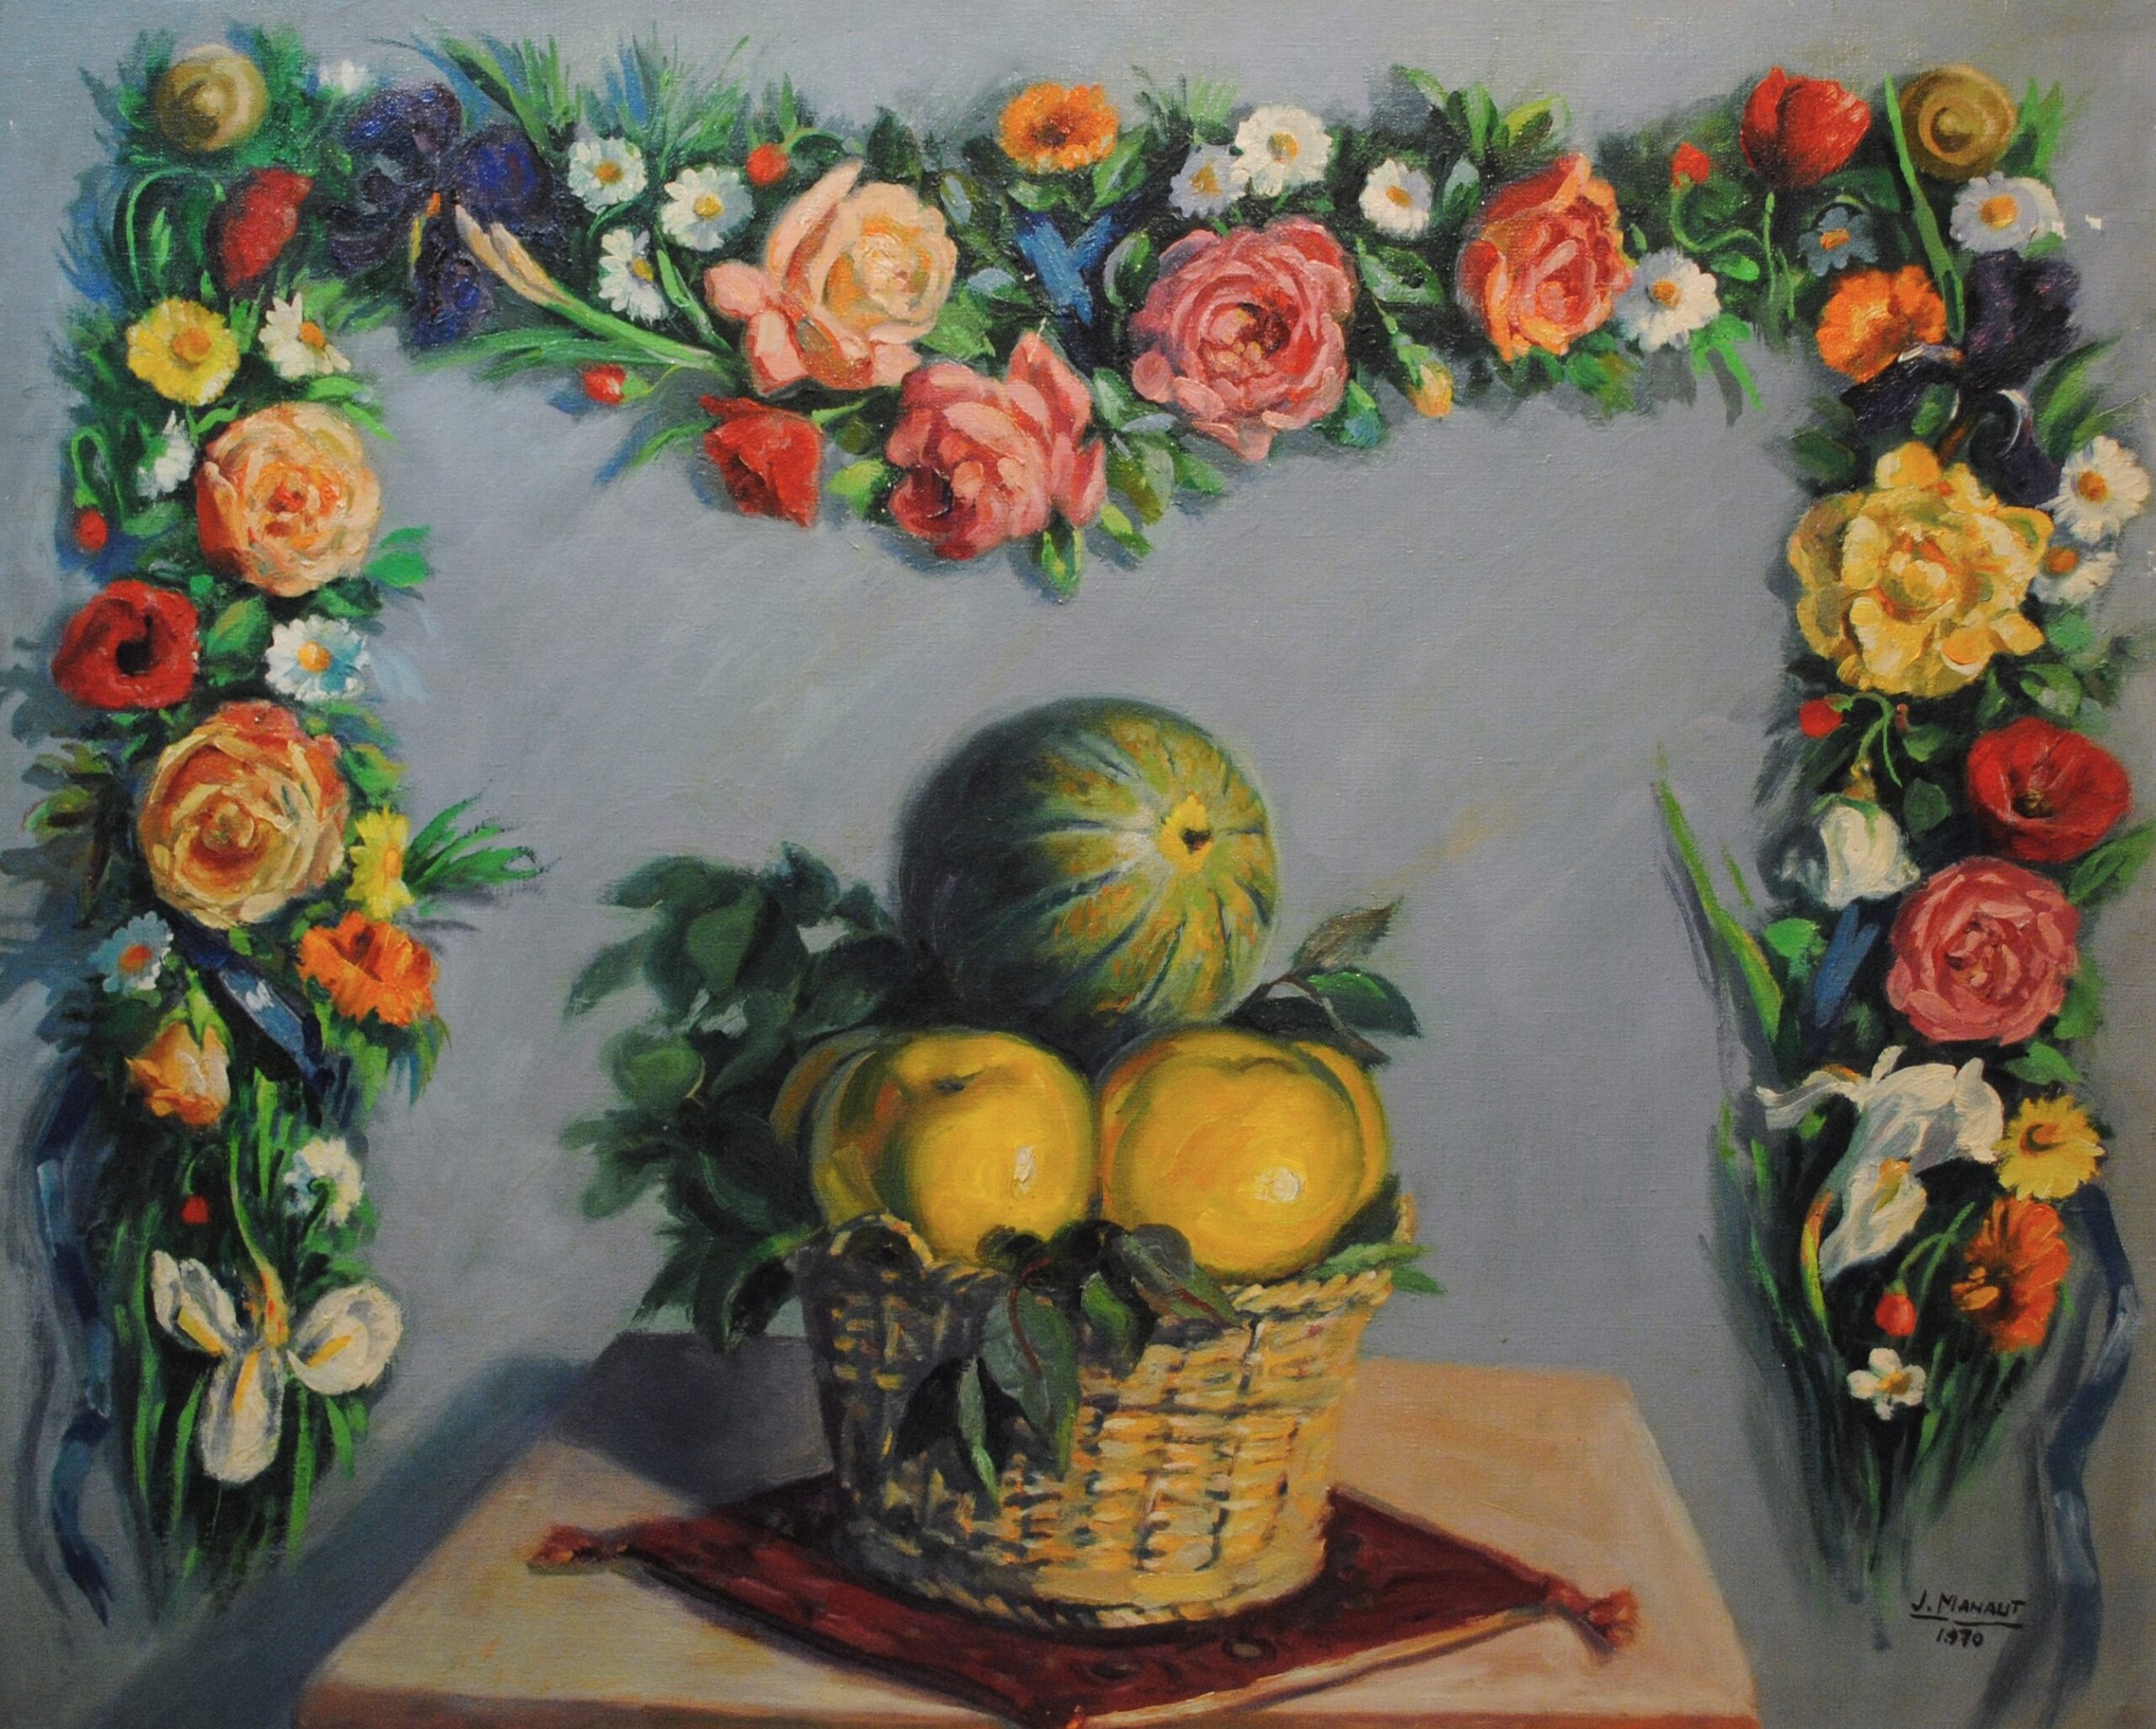 Pintura de José Manaut titulada Bodegón con frutas y orlas de flores, 1970. Óleo sobre lienzo.